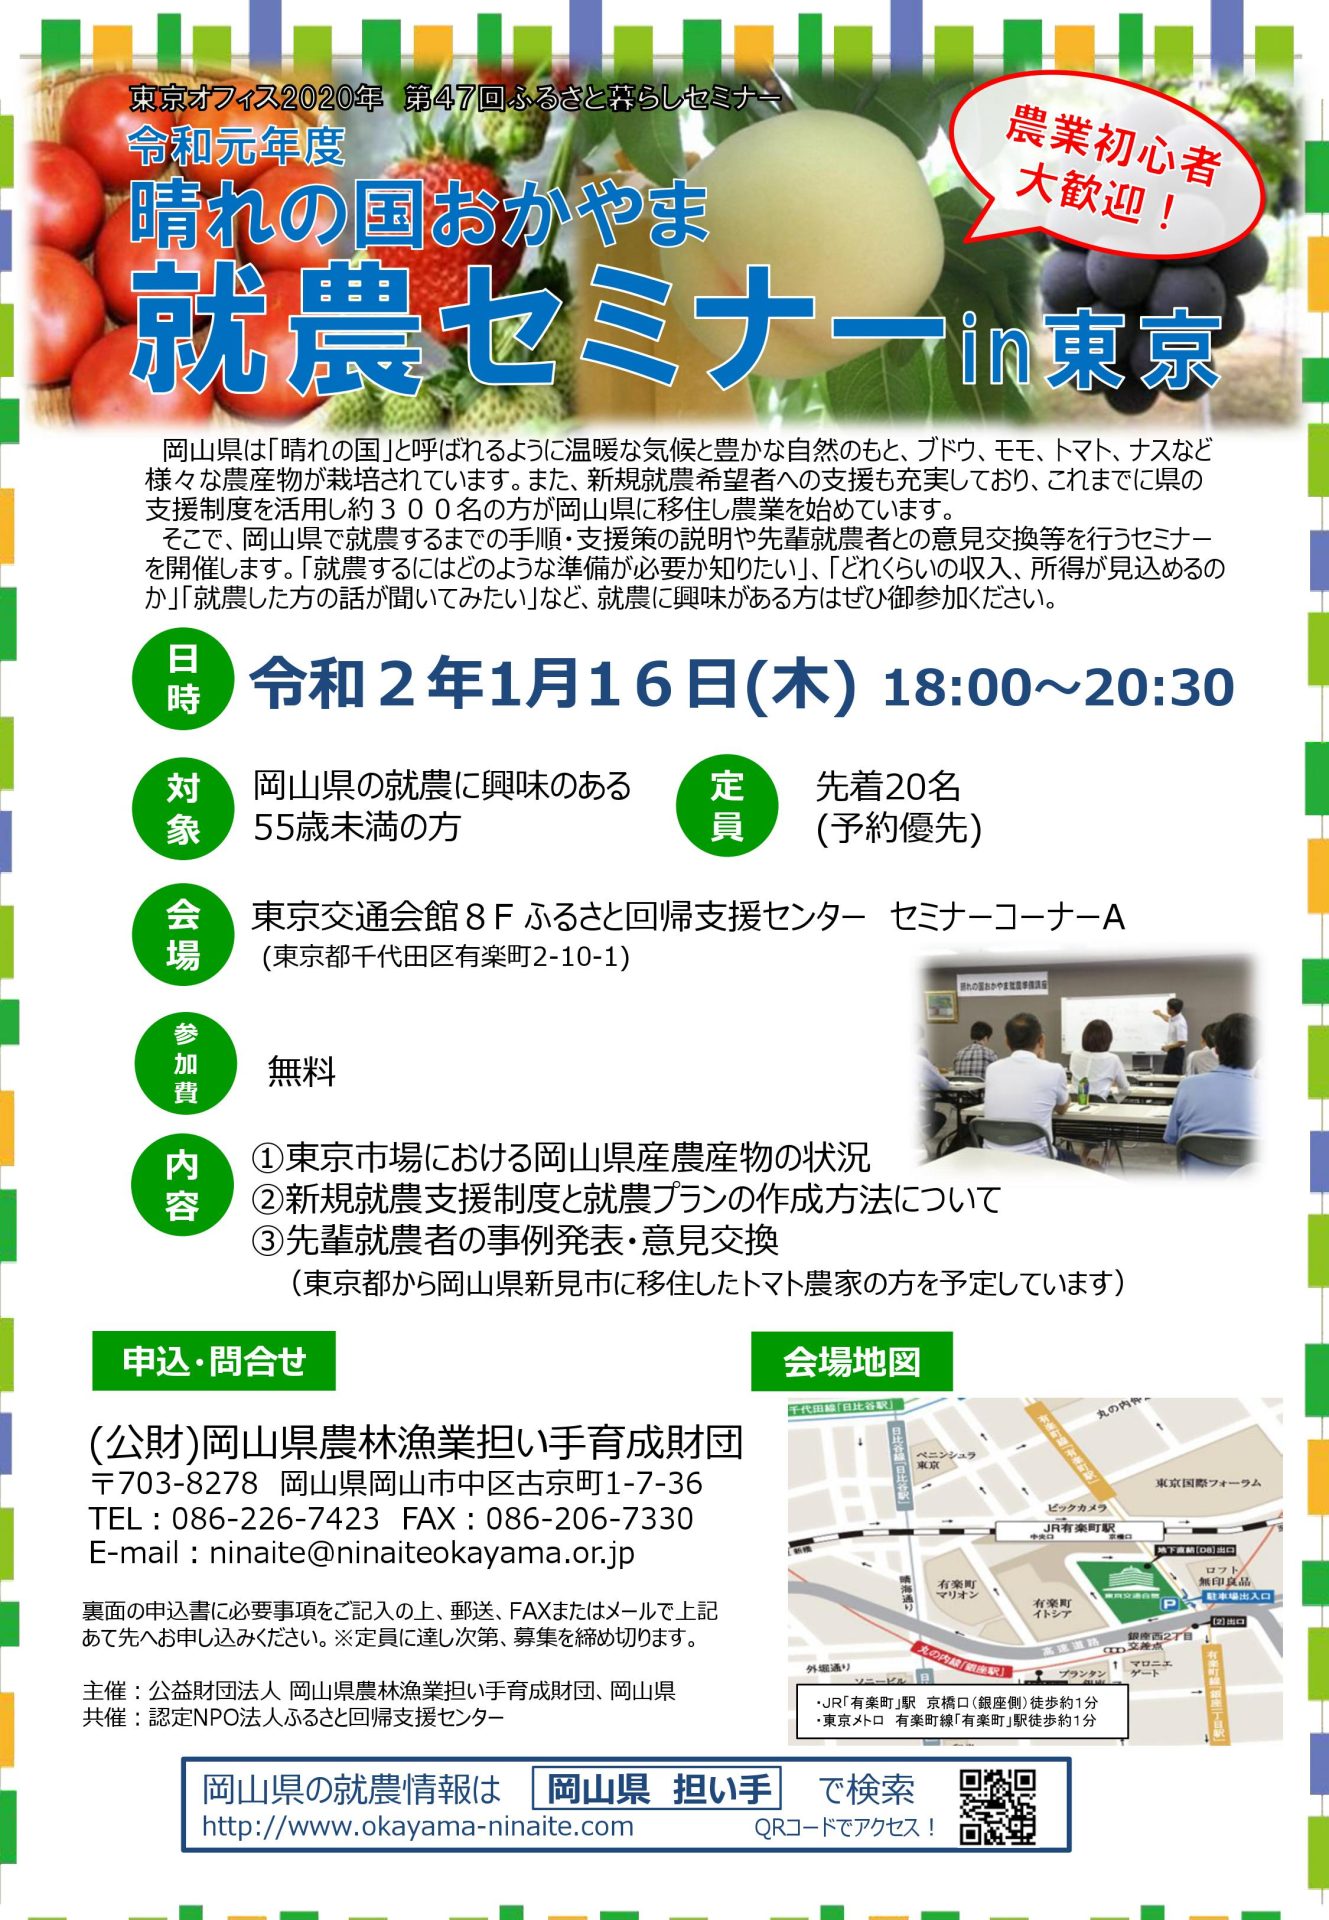 晴れの国おかやま就農セミナーin東京 | 移住関連イベント情報